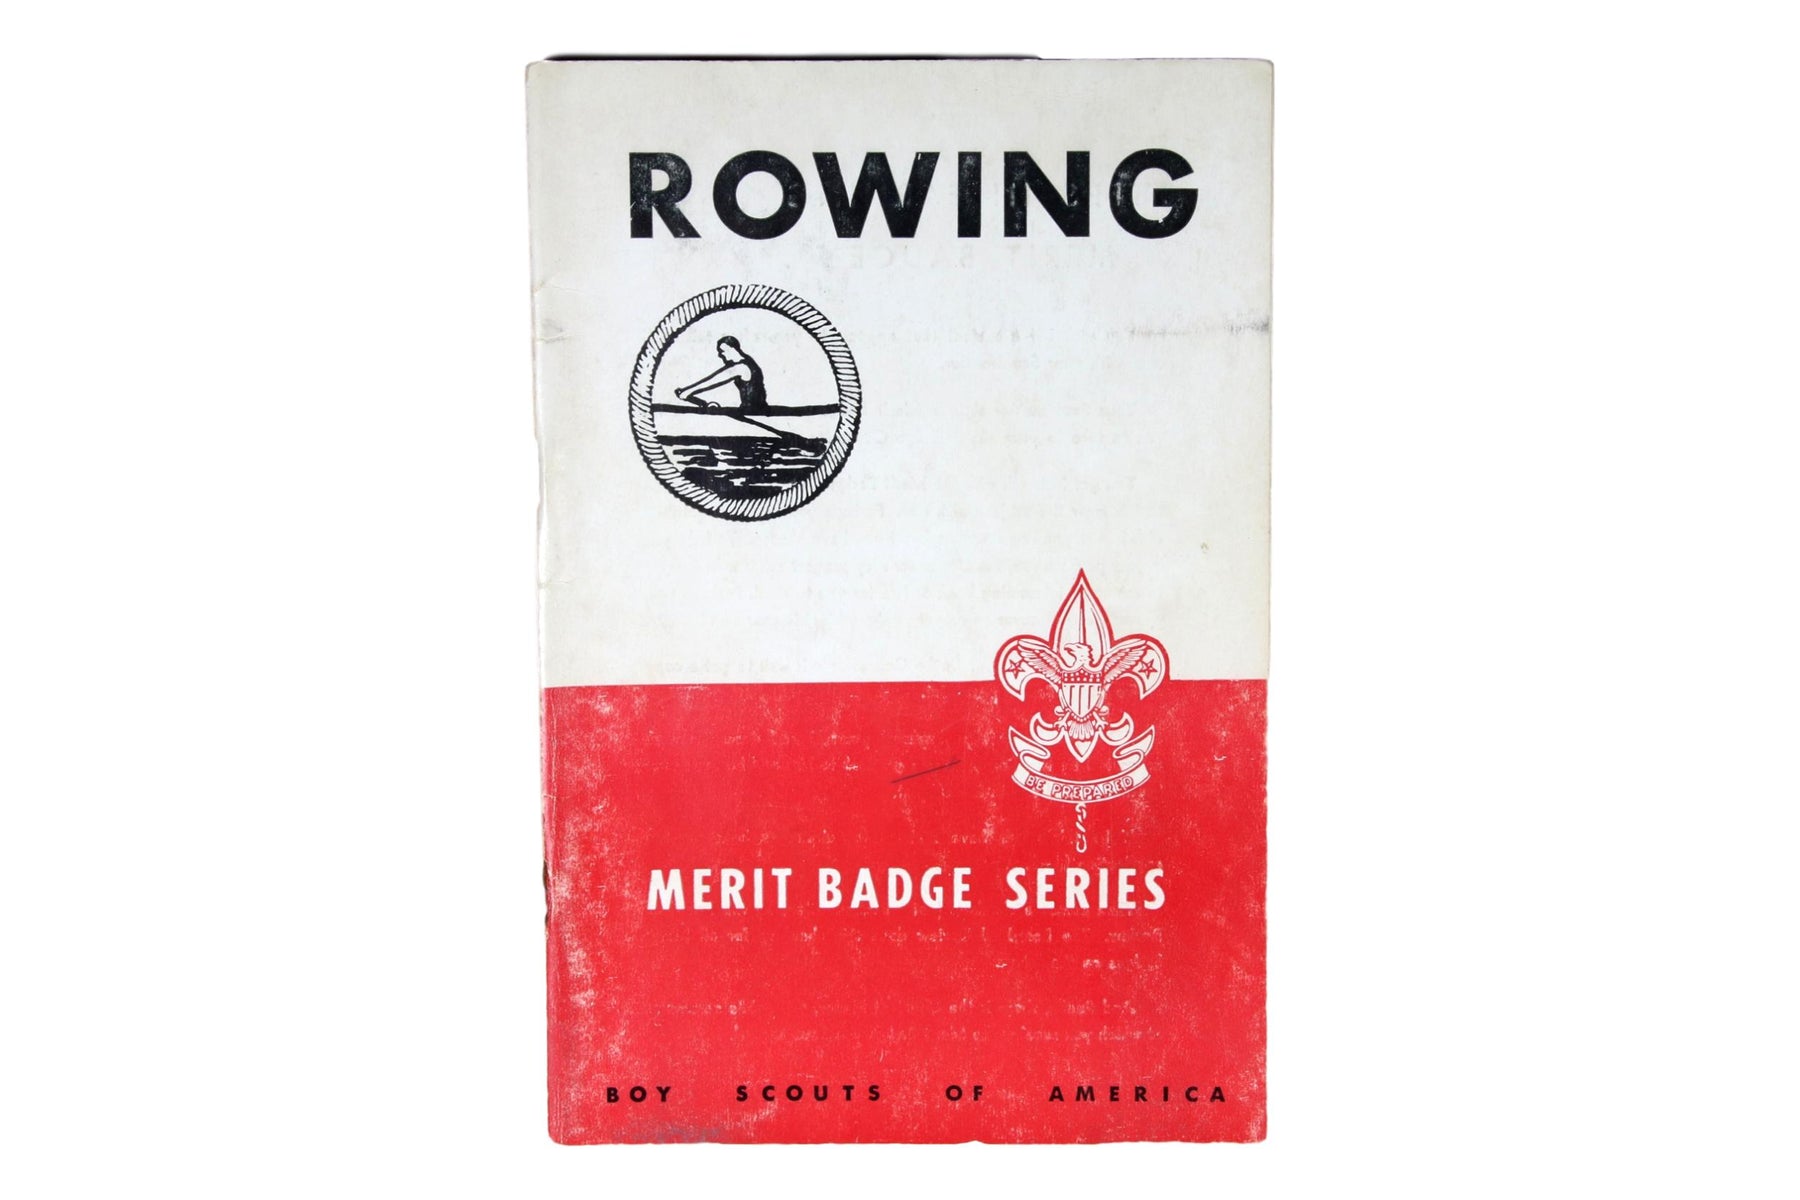 Rowing MBP 1949